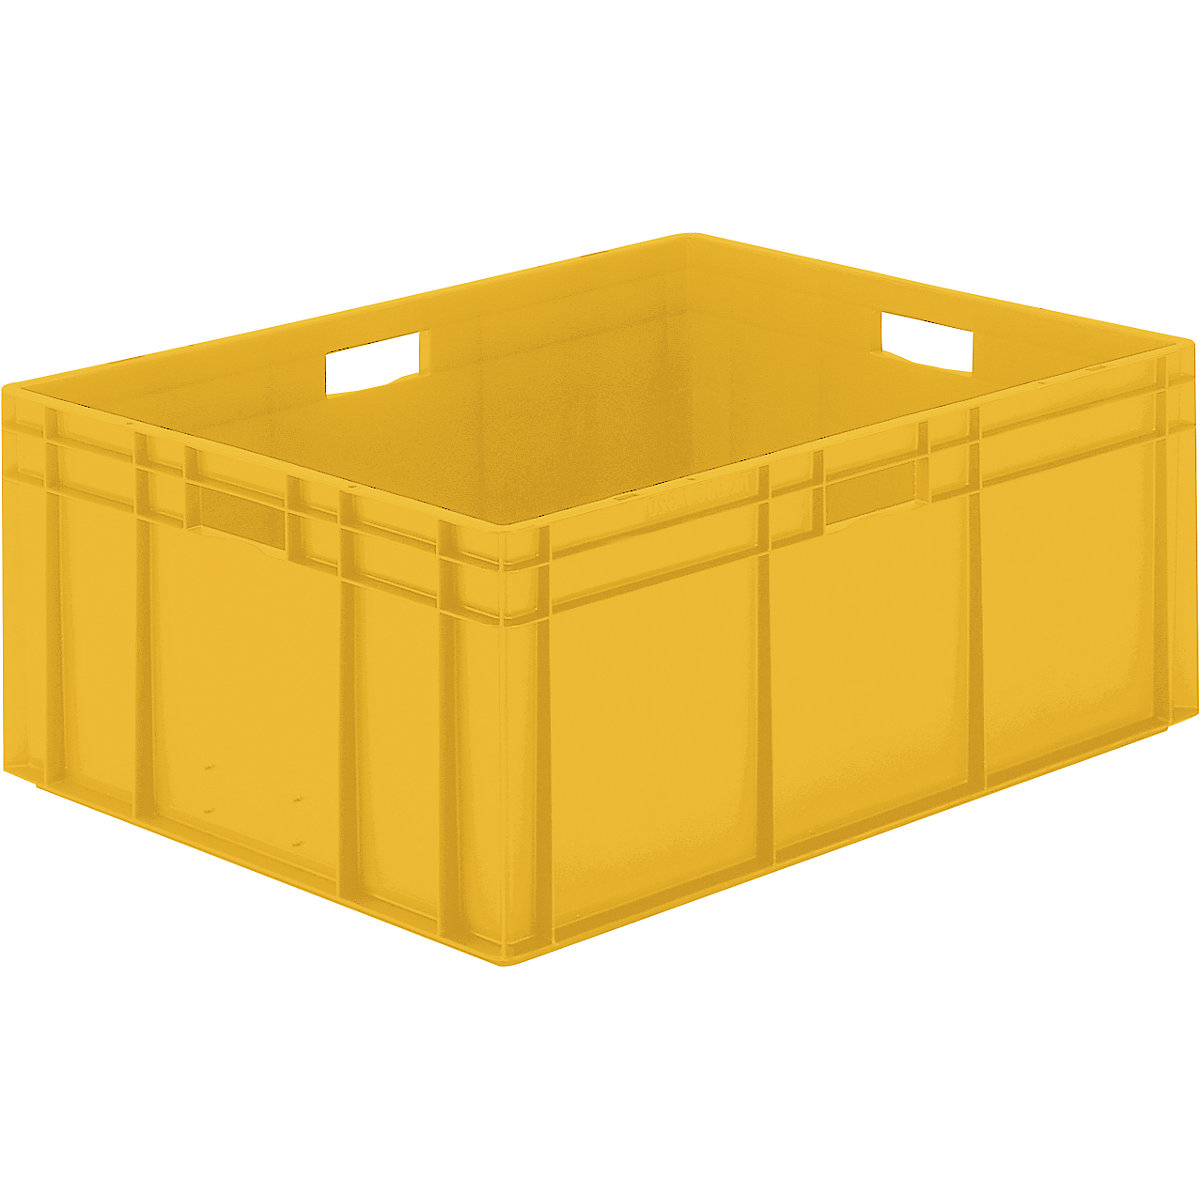 Euro-Format-Stapelbehälter, Wände und Boden geschlossen, LxBxH 800 x 600 x 320 mm, gelb, VE 2 Stk-6